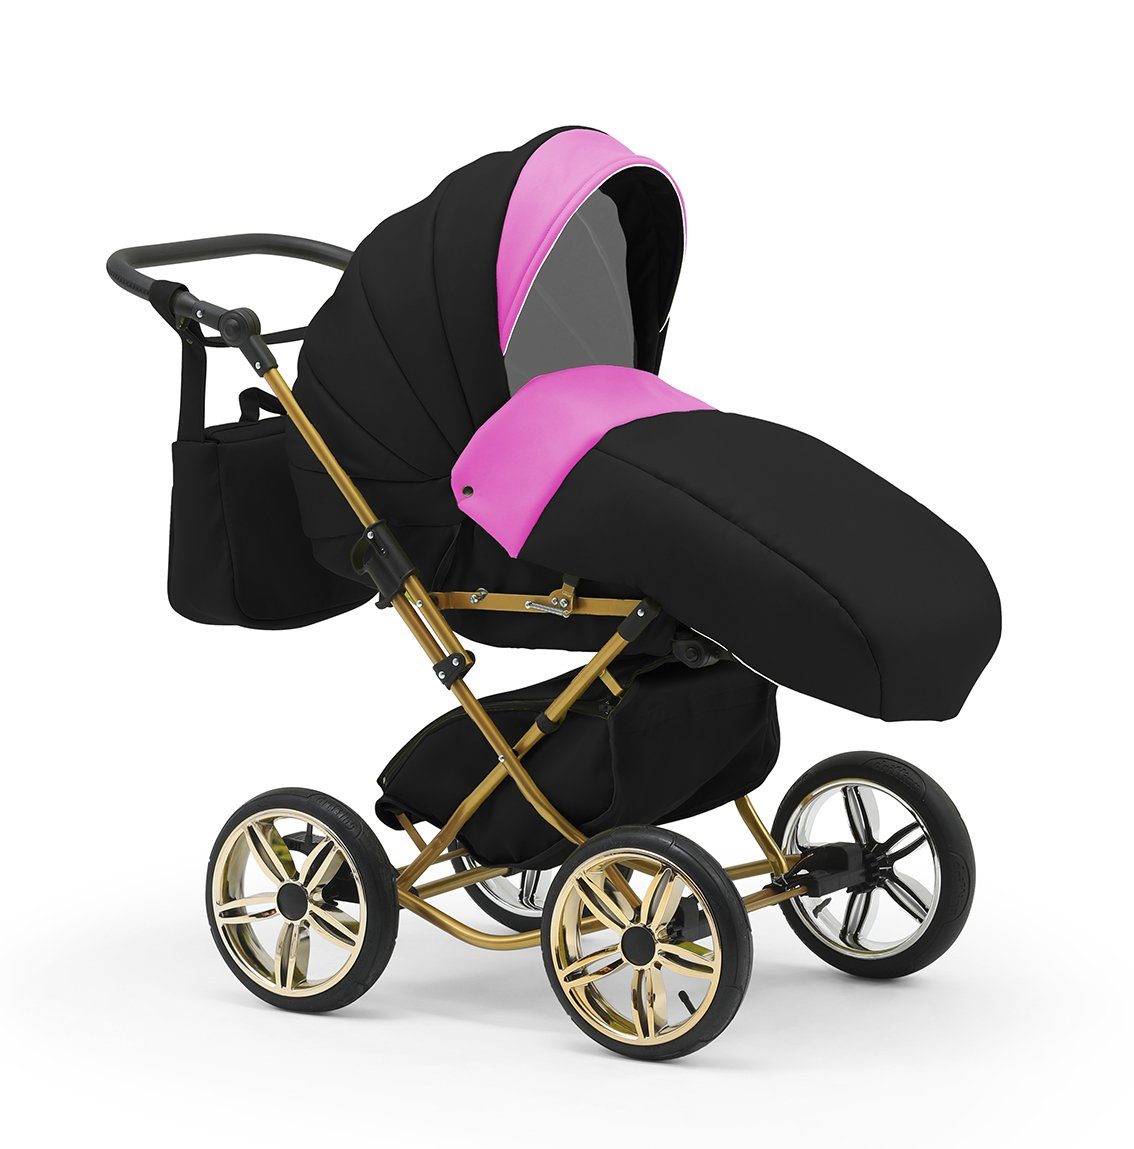 30 bis - Kombi-Kinderwagen 2 4 babies-on-wheels in Pink-Schwarz - Sorento in Designs Geburt von Jahre Teile 1 11